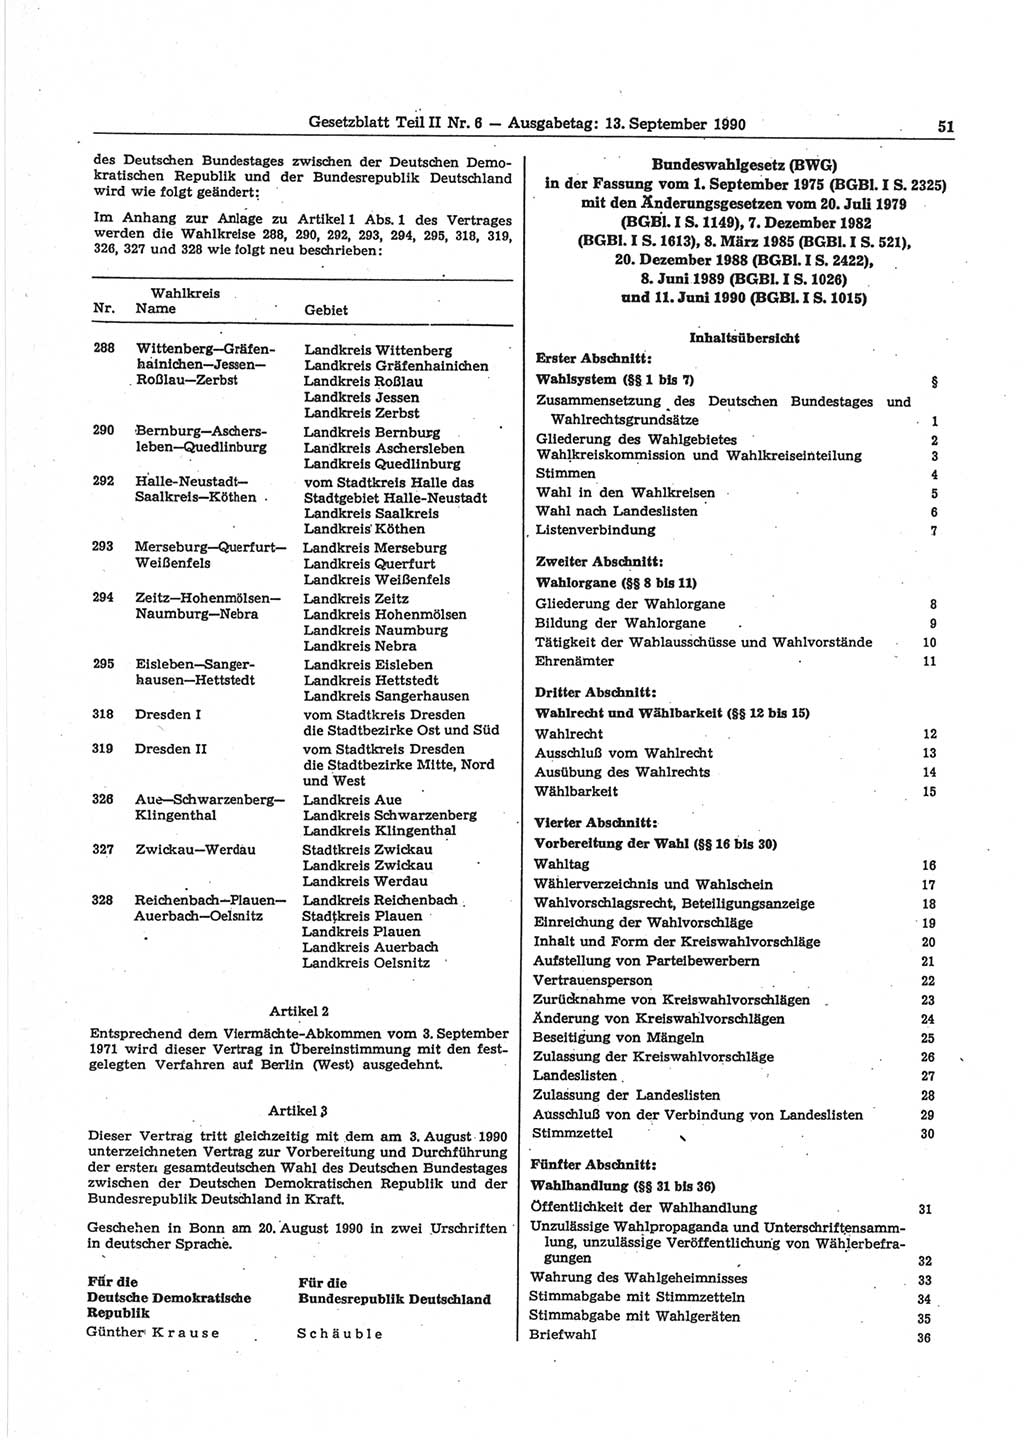 Gesetzblatt (GBl.) der Deutschen Demokratischen Republik (DDR) Teil ⅠⅠ 1990, Seite 51 (GBl. DDR ⅠⅠ 1990, S. 51)